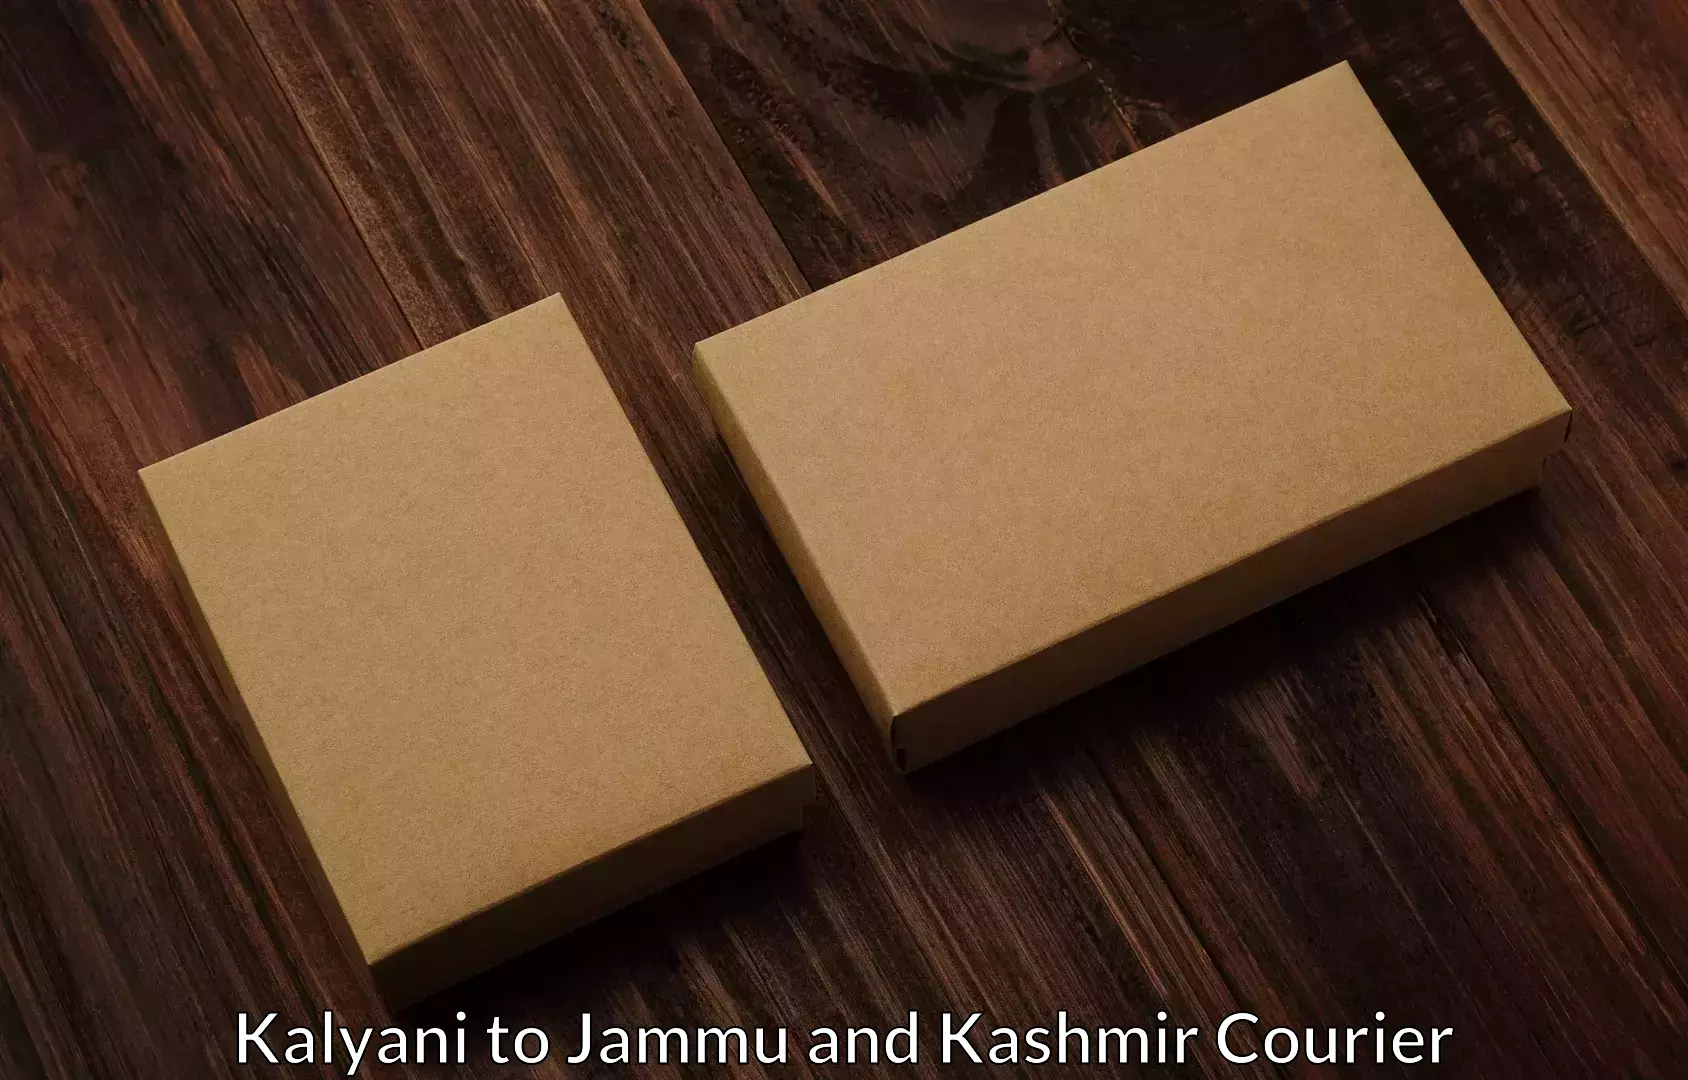 Nationwide furniture transport Kalyani to Jammu and Kashmir